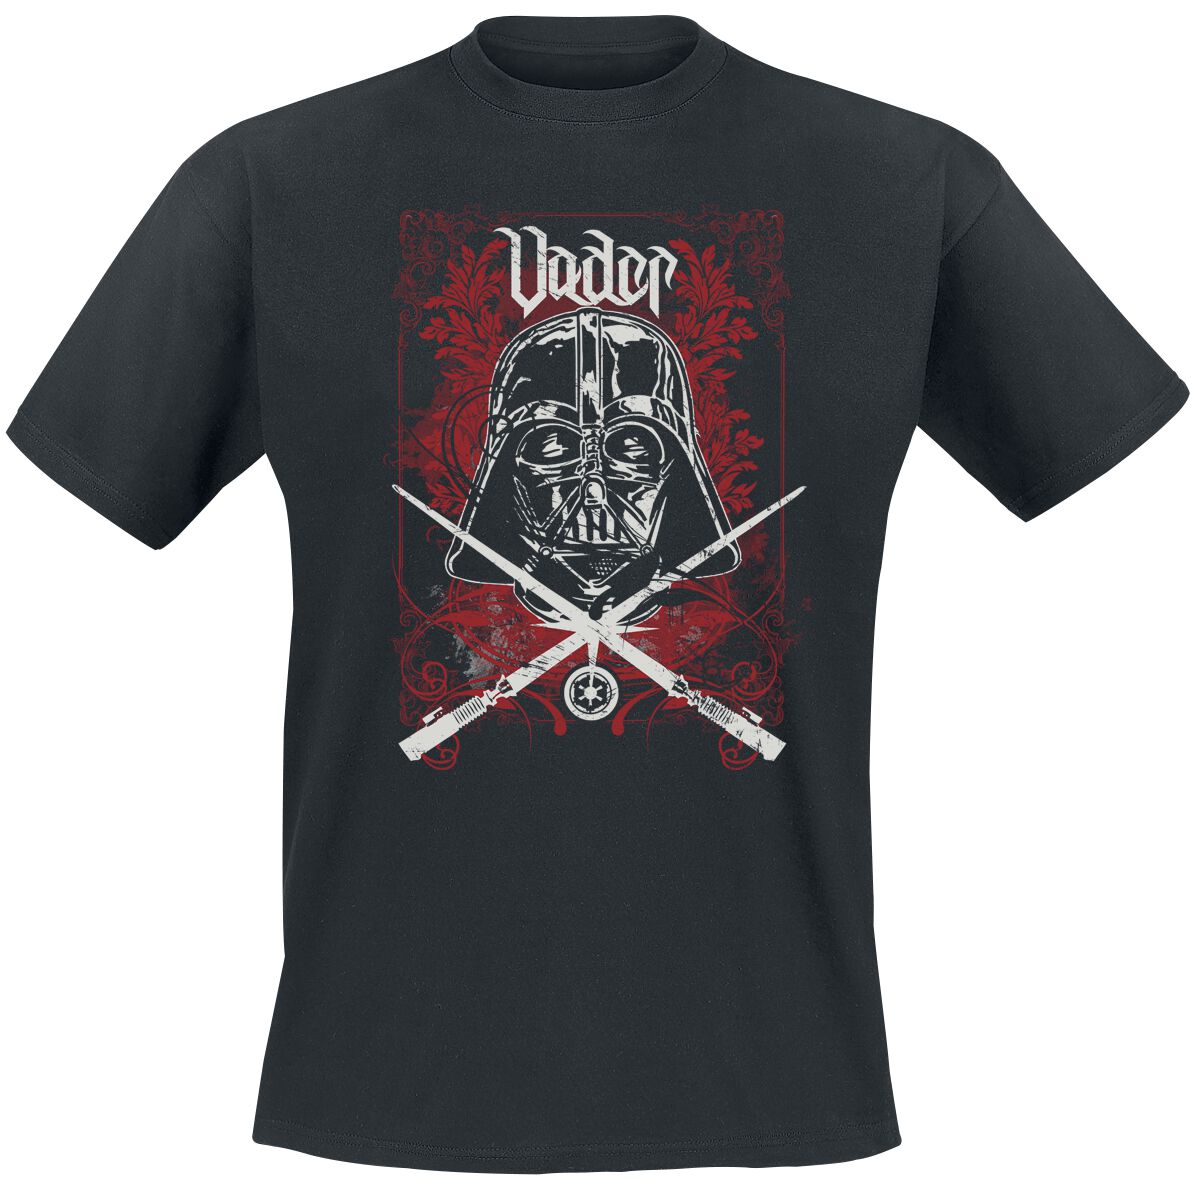 Star Wars T-Shirt - Darth Vader - S bis L - für Männer - Größe S - schwarz  - EMP exklusives Merchandise!